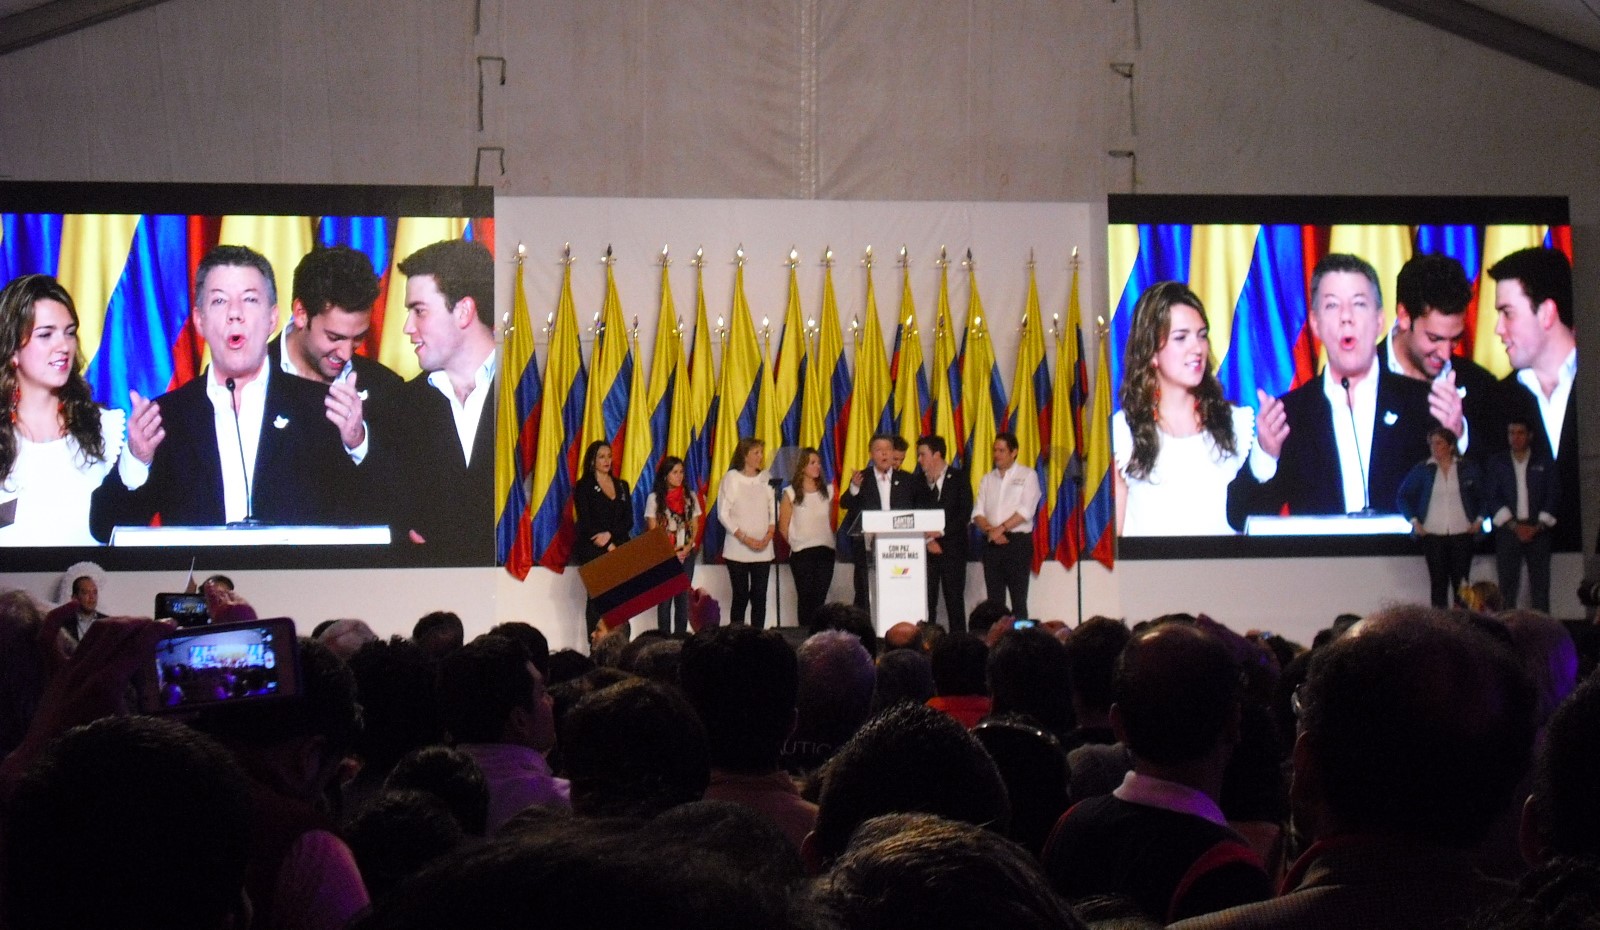 Santos delivering his re-election victory speech